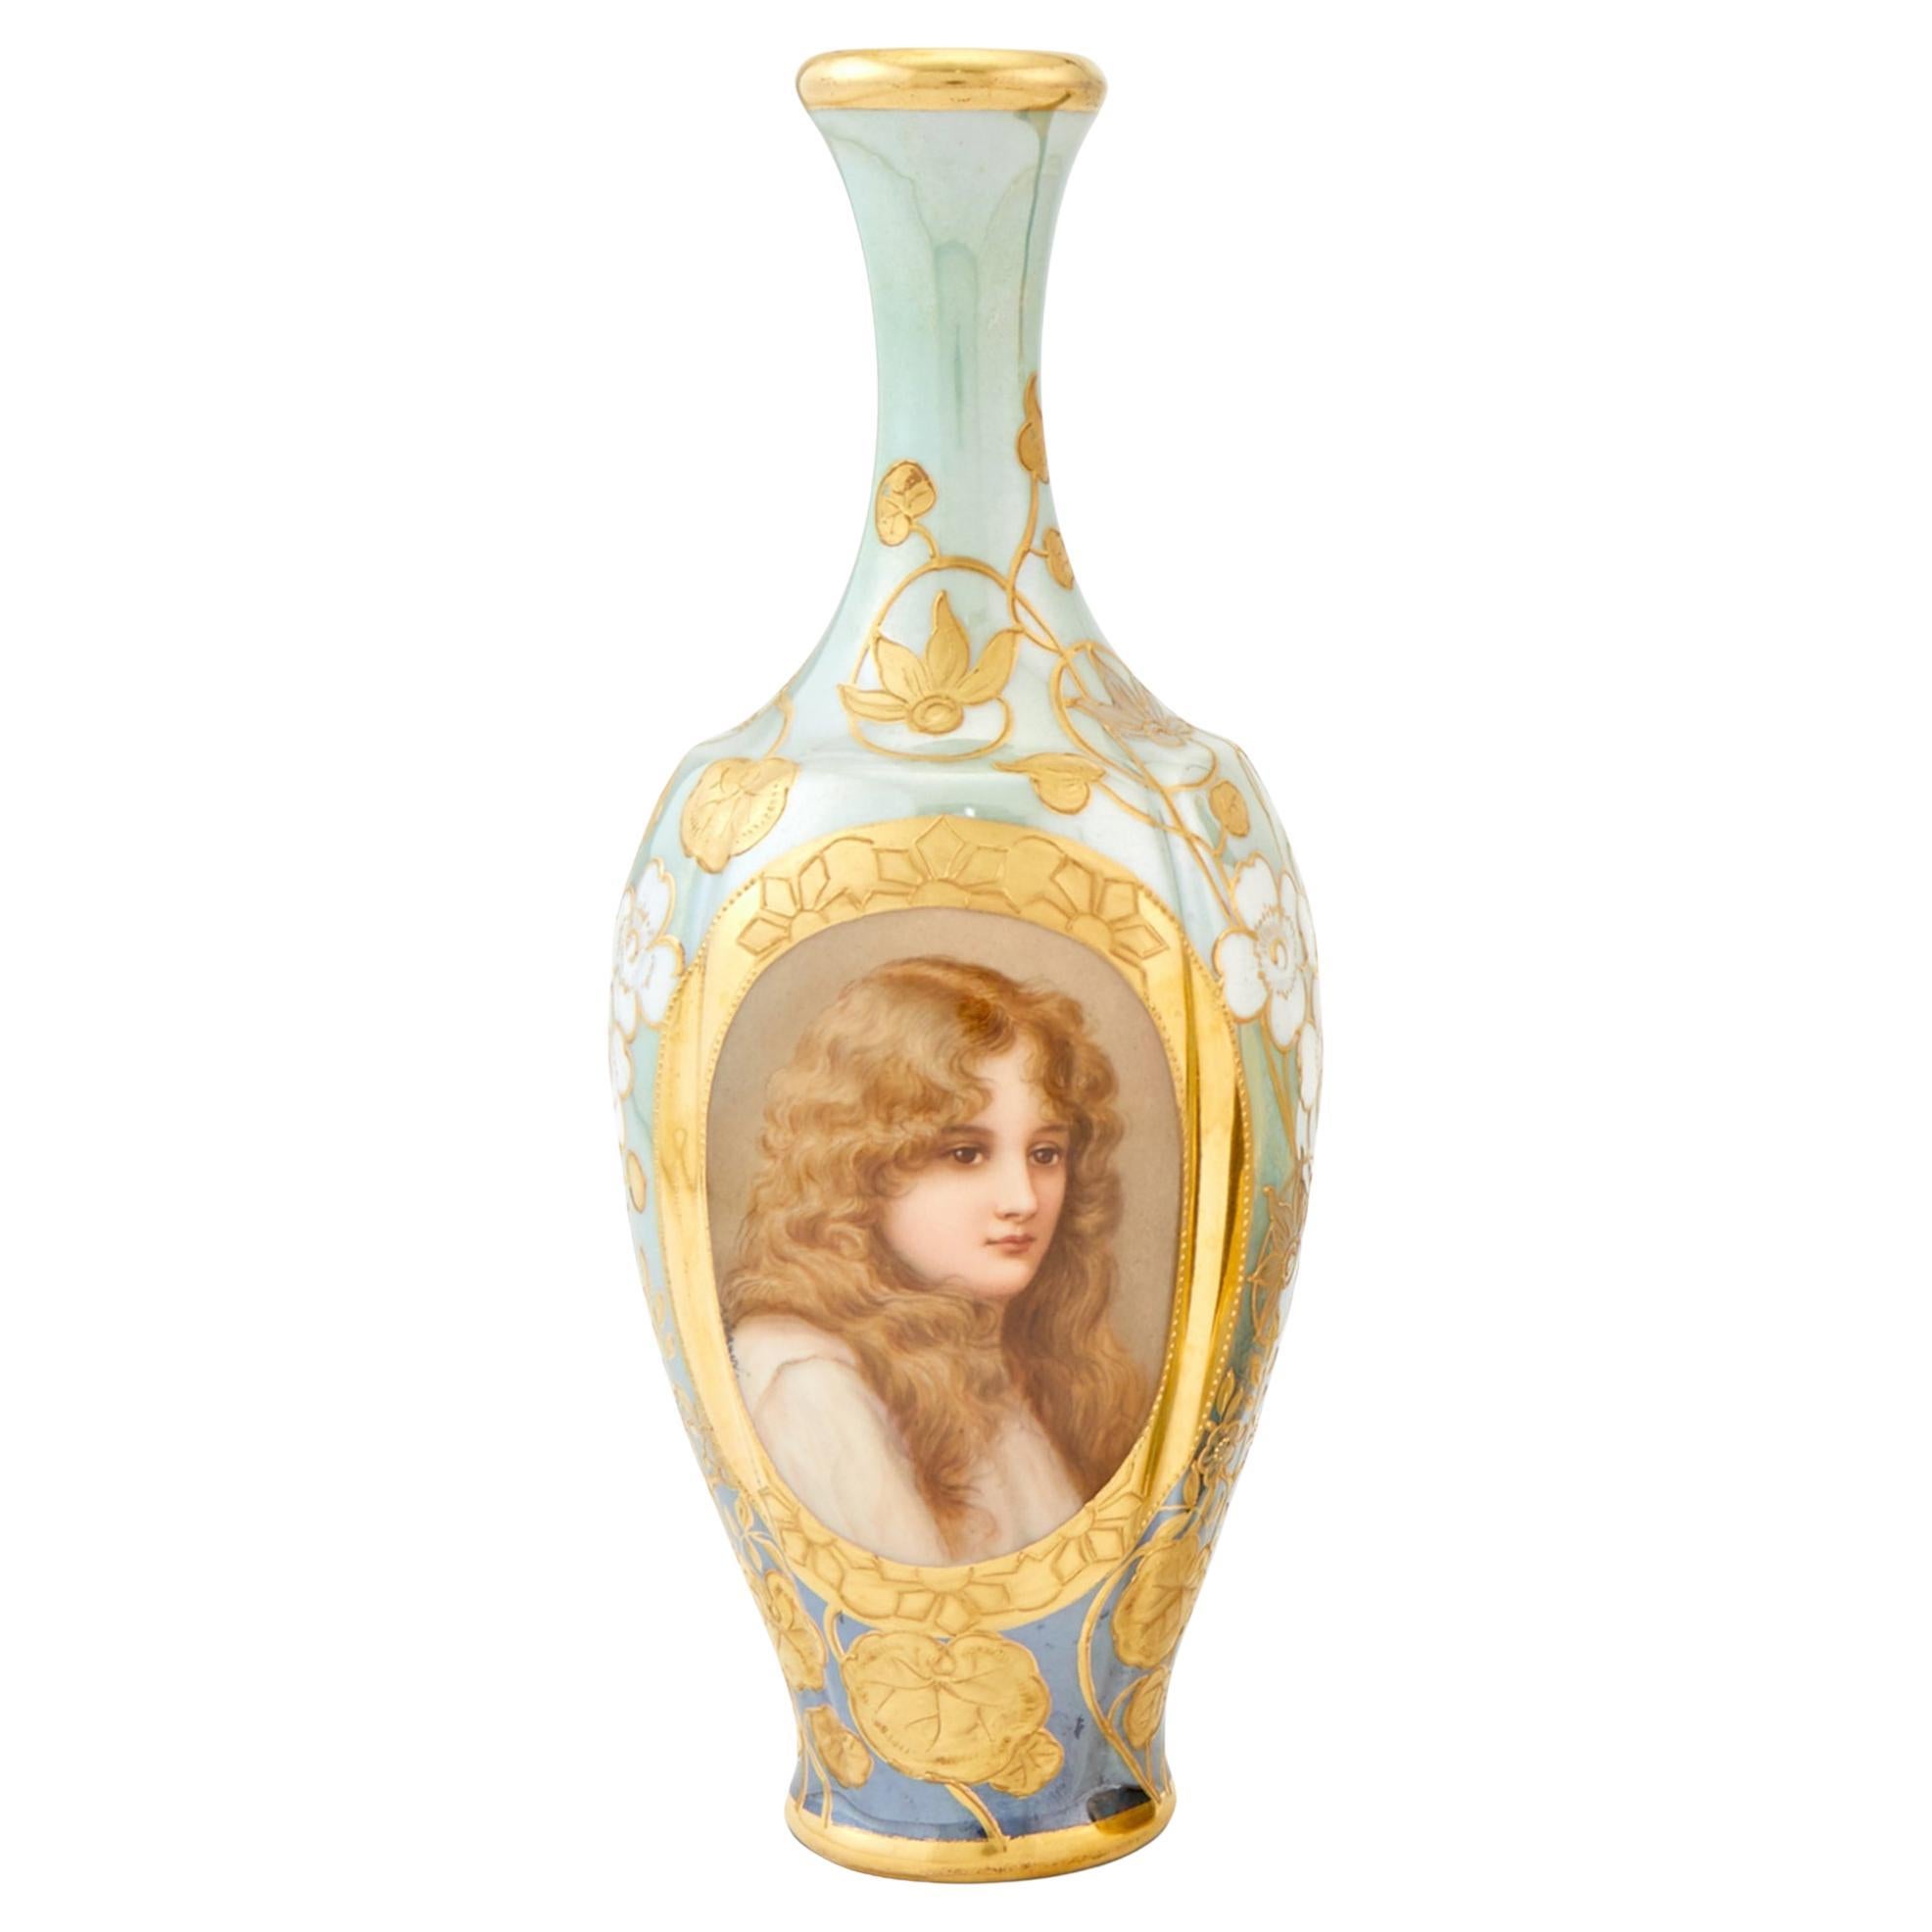  Art Nouveau Royal Vienna Hand-Painted Porcelain Portrait Cabinet Vase For Sale